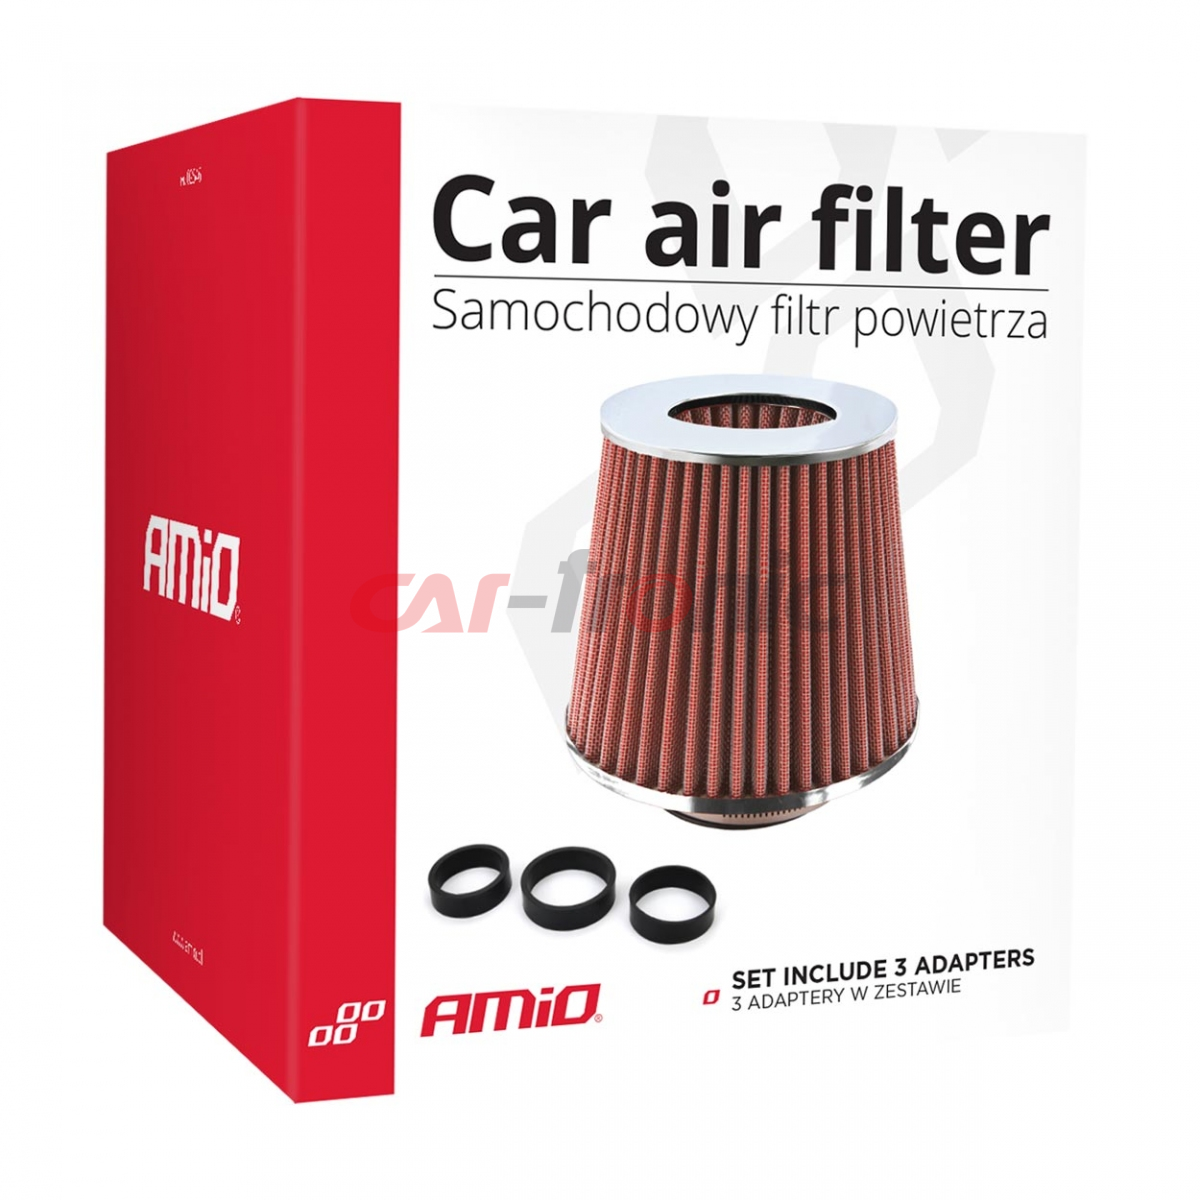 Filtr powietrza stożkowy uniwersalny czerwony/chrom + 3 adaptery AMIO-01282